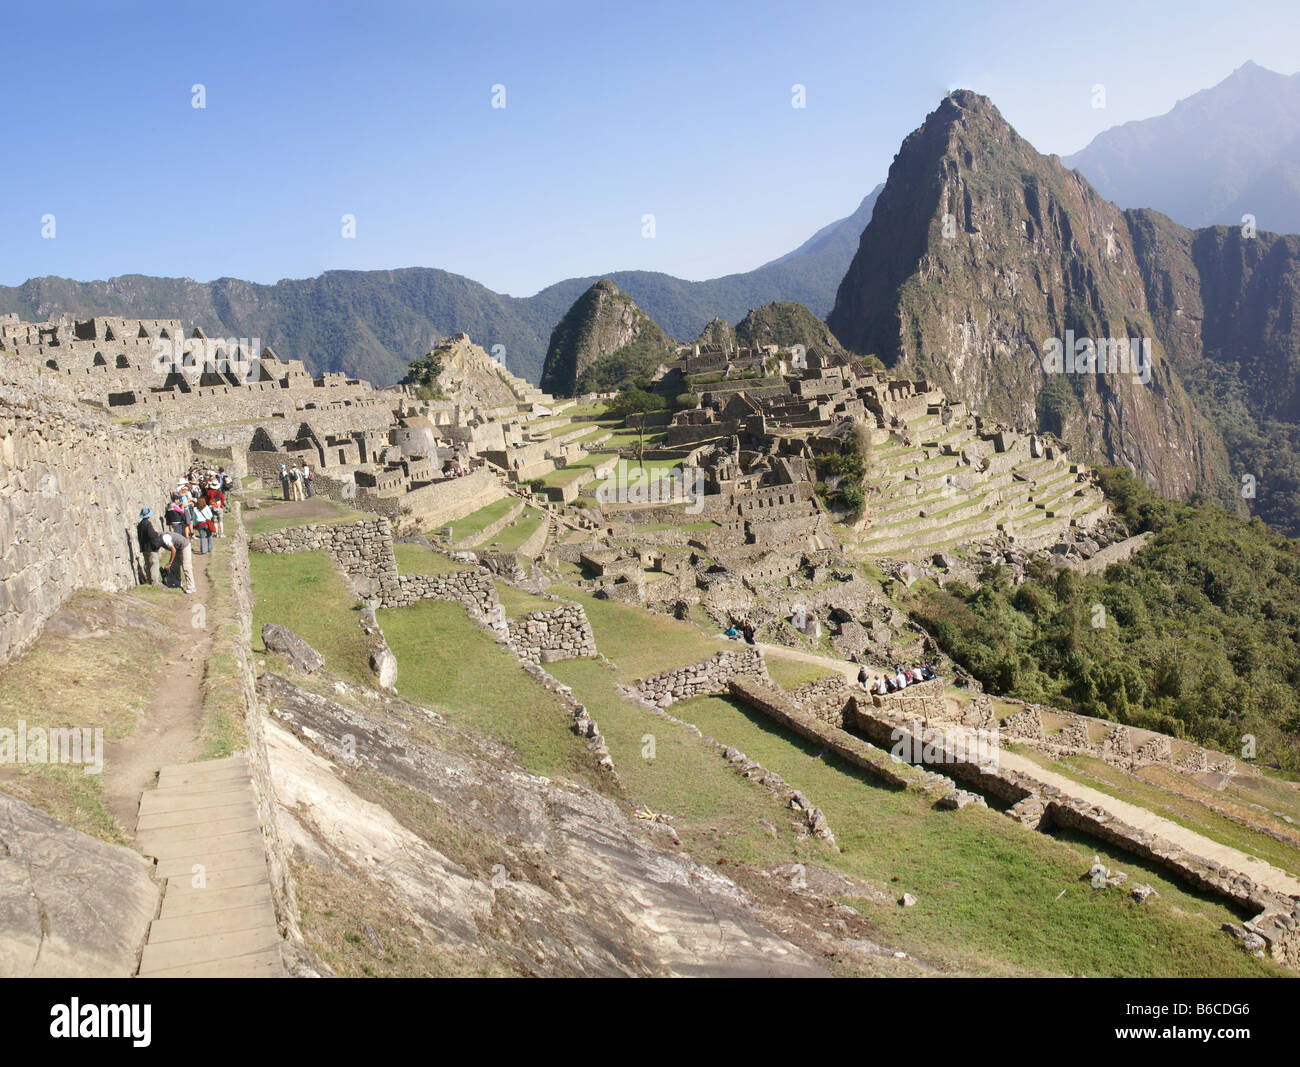 La montagne Huayna Picchu panorama surplombant les ruines Inca Machu Picchu Pérou Amérique du Sud Banque D'Images